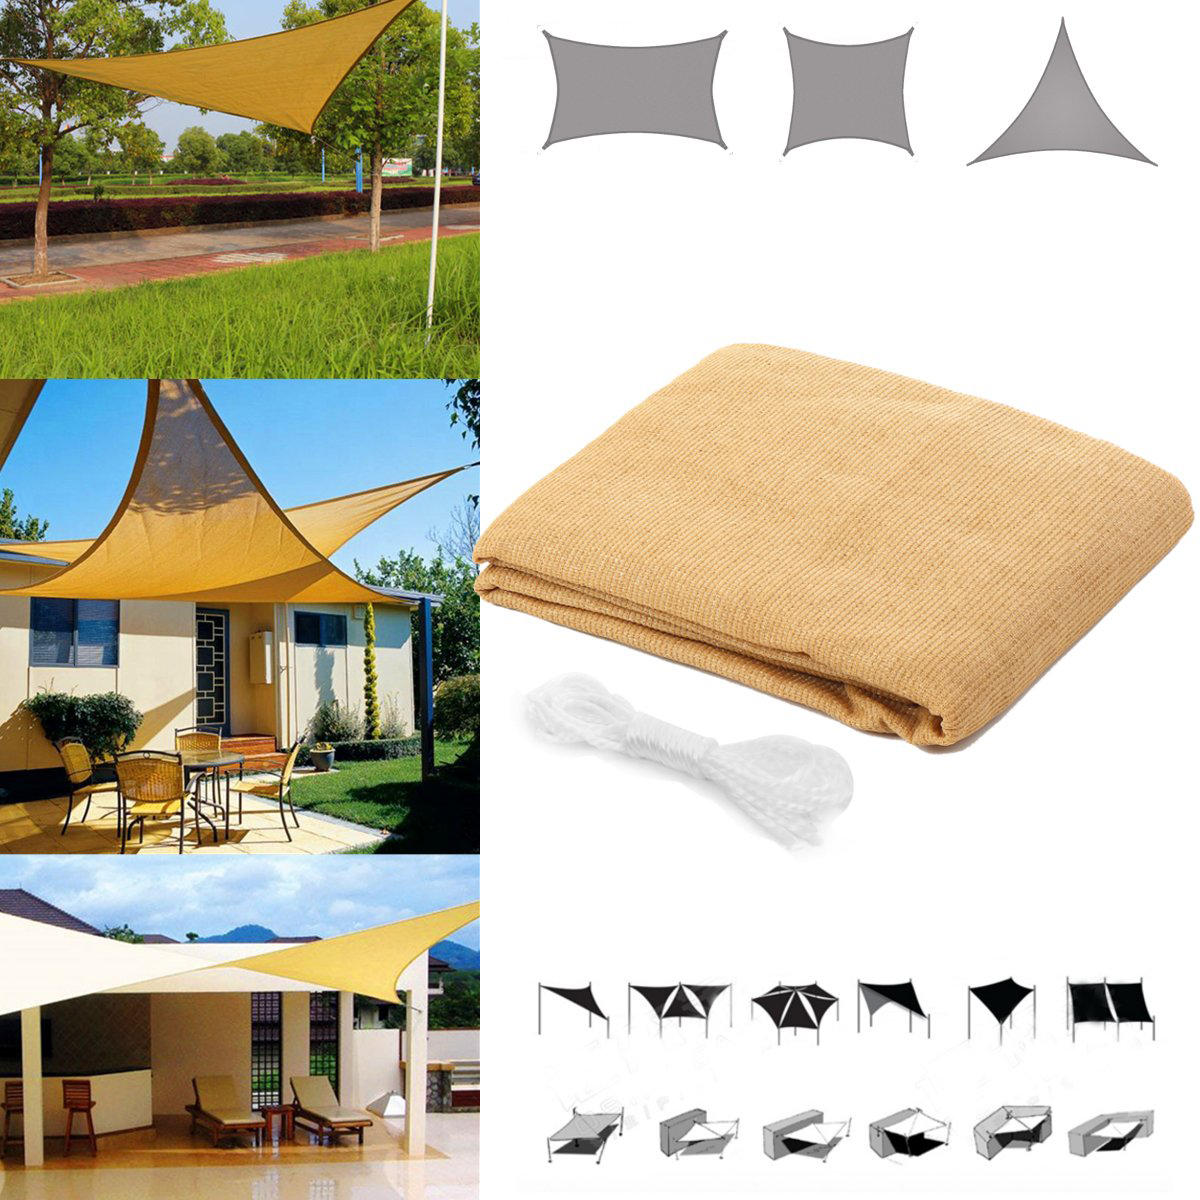 Tenda de quadrilátero/triângulo para proteção solar, à prova d'água e anti-UV, com cobertura para jardim, pátio, camping ao ar livre.